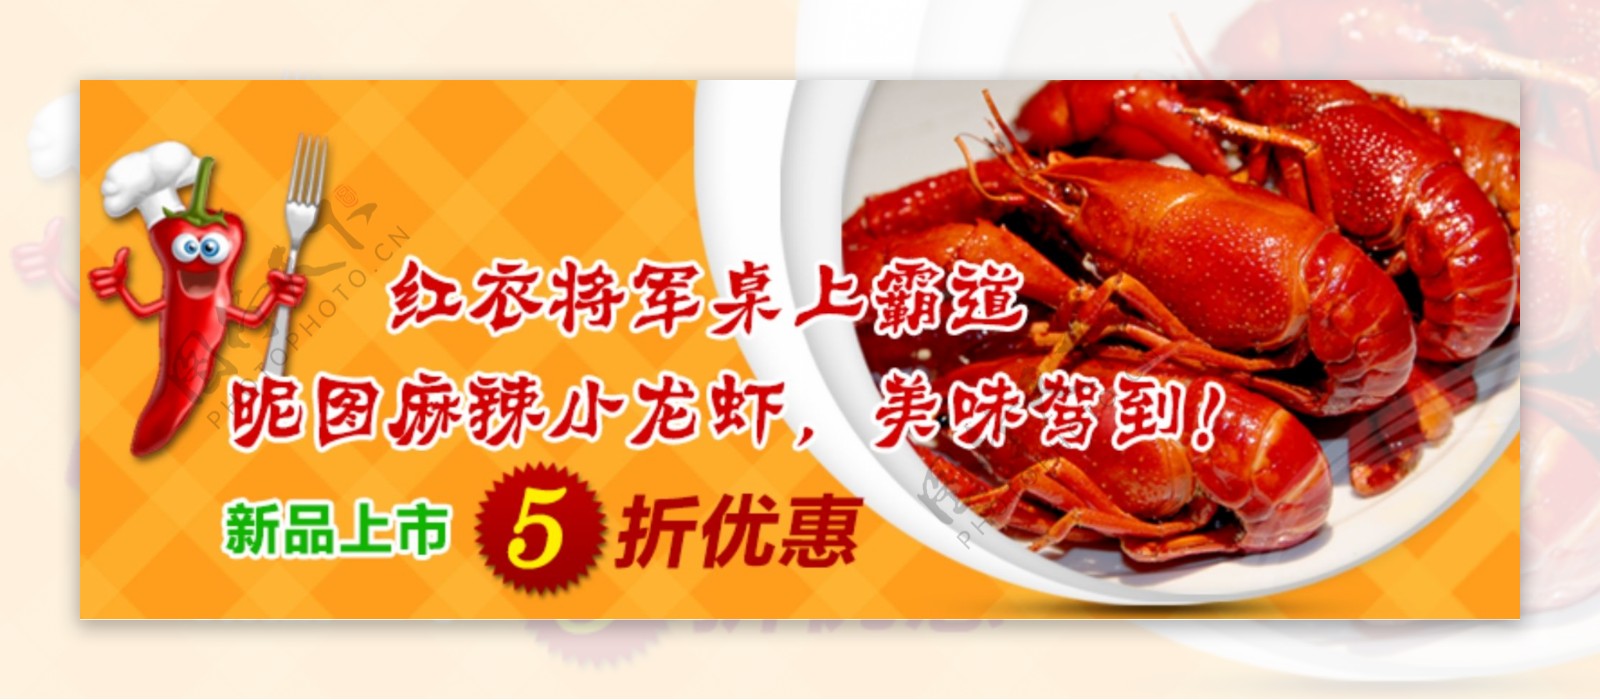 小龙虾banner图